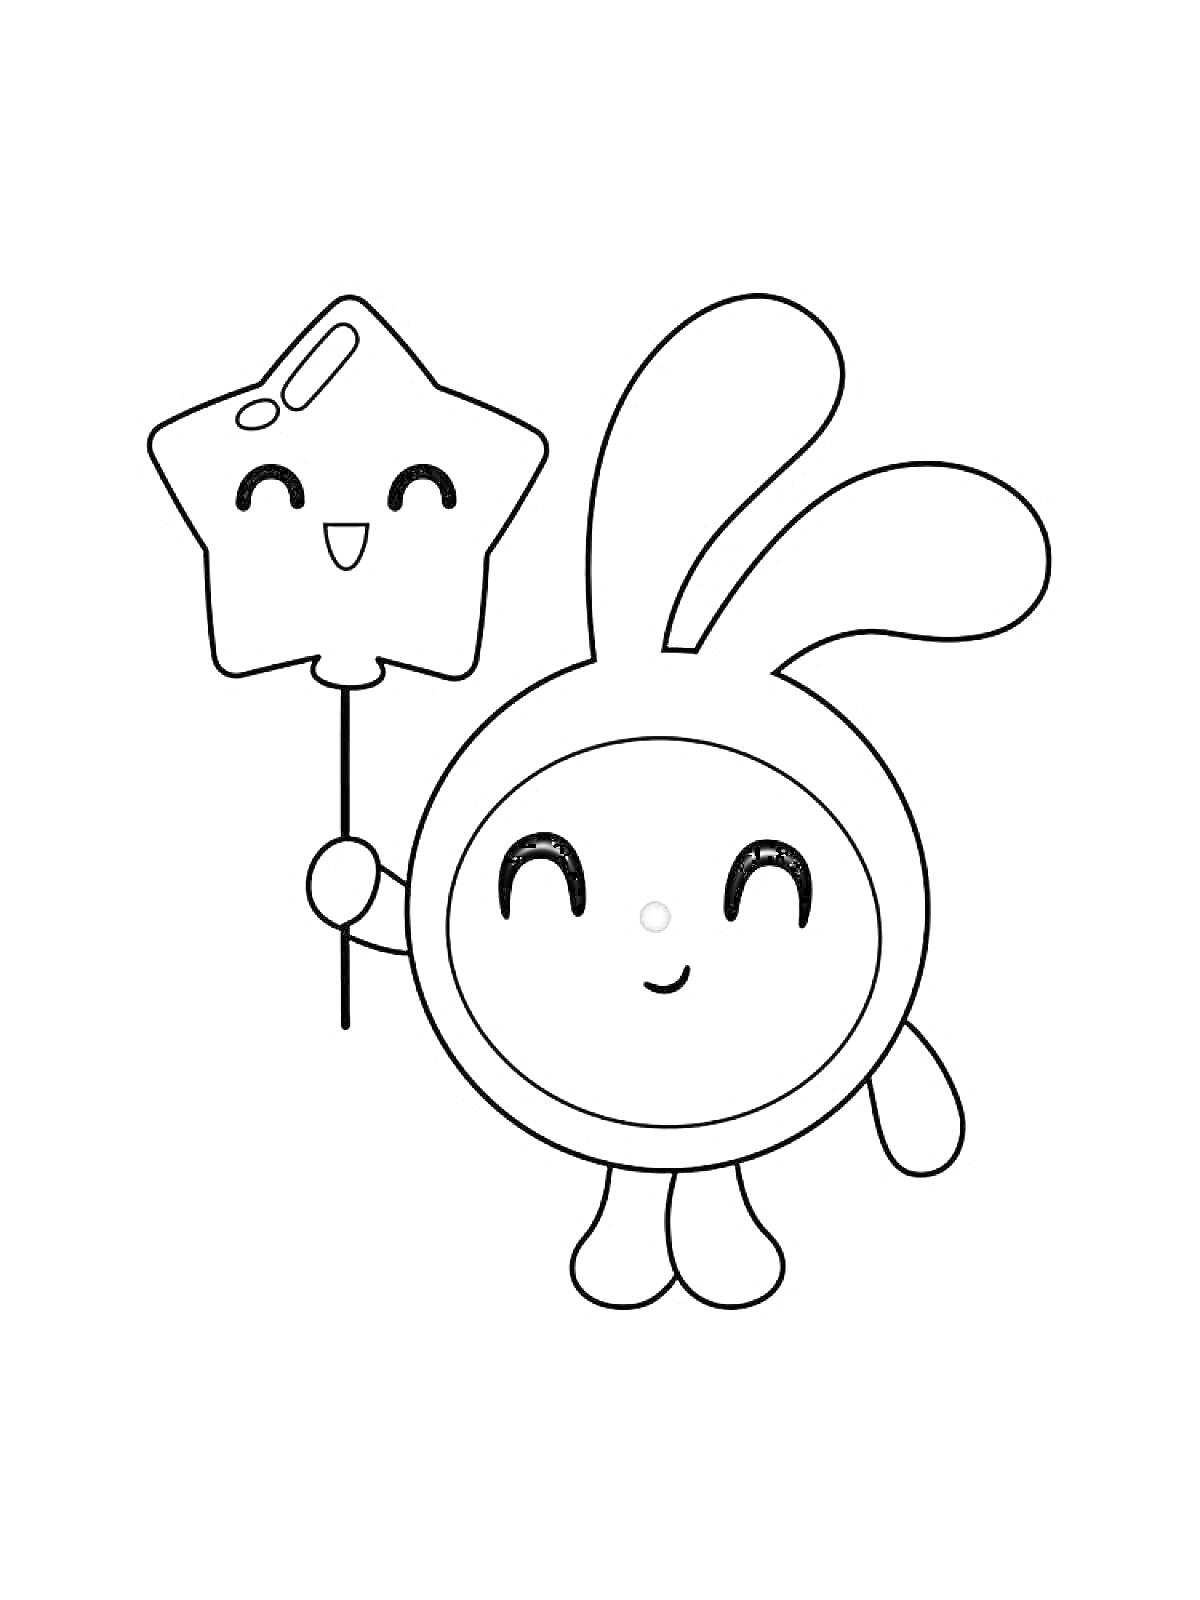 Раскраска Малышарик с ушками кролика, держащий в руке волшебную палочку в форме звезды с улыбающимся лицом